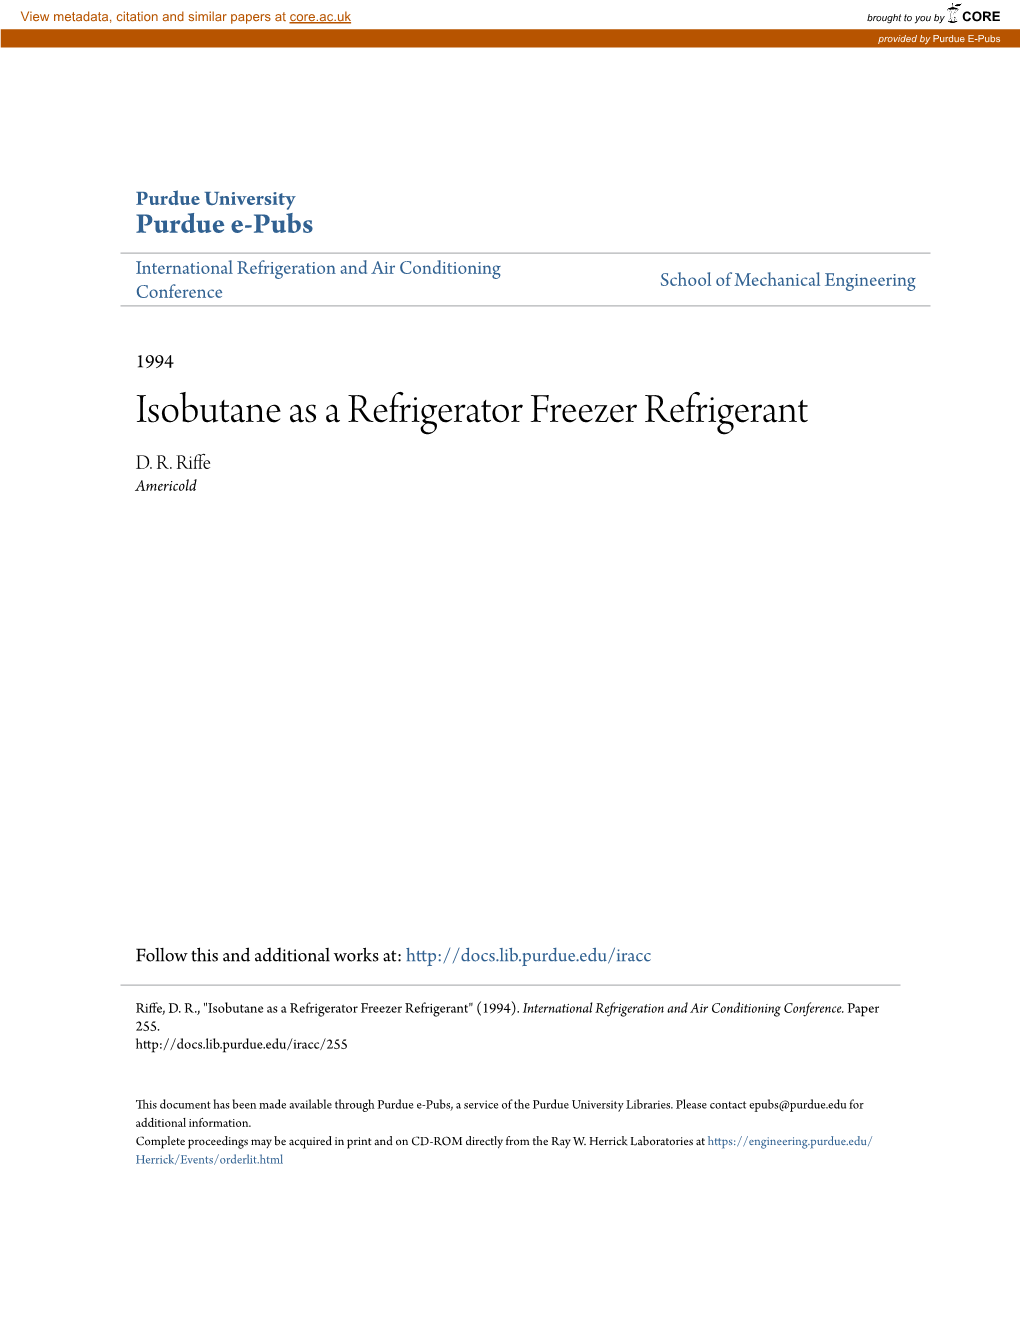 Isobutane As a Refrigerator Freezer Refrigerant D